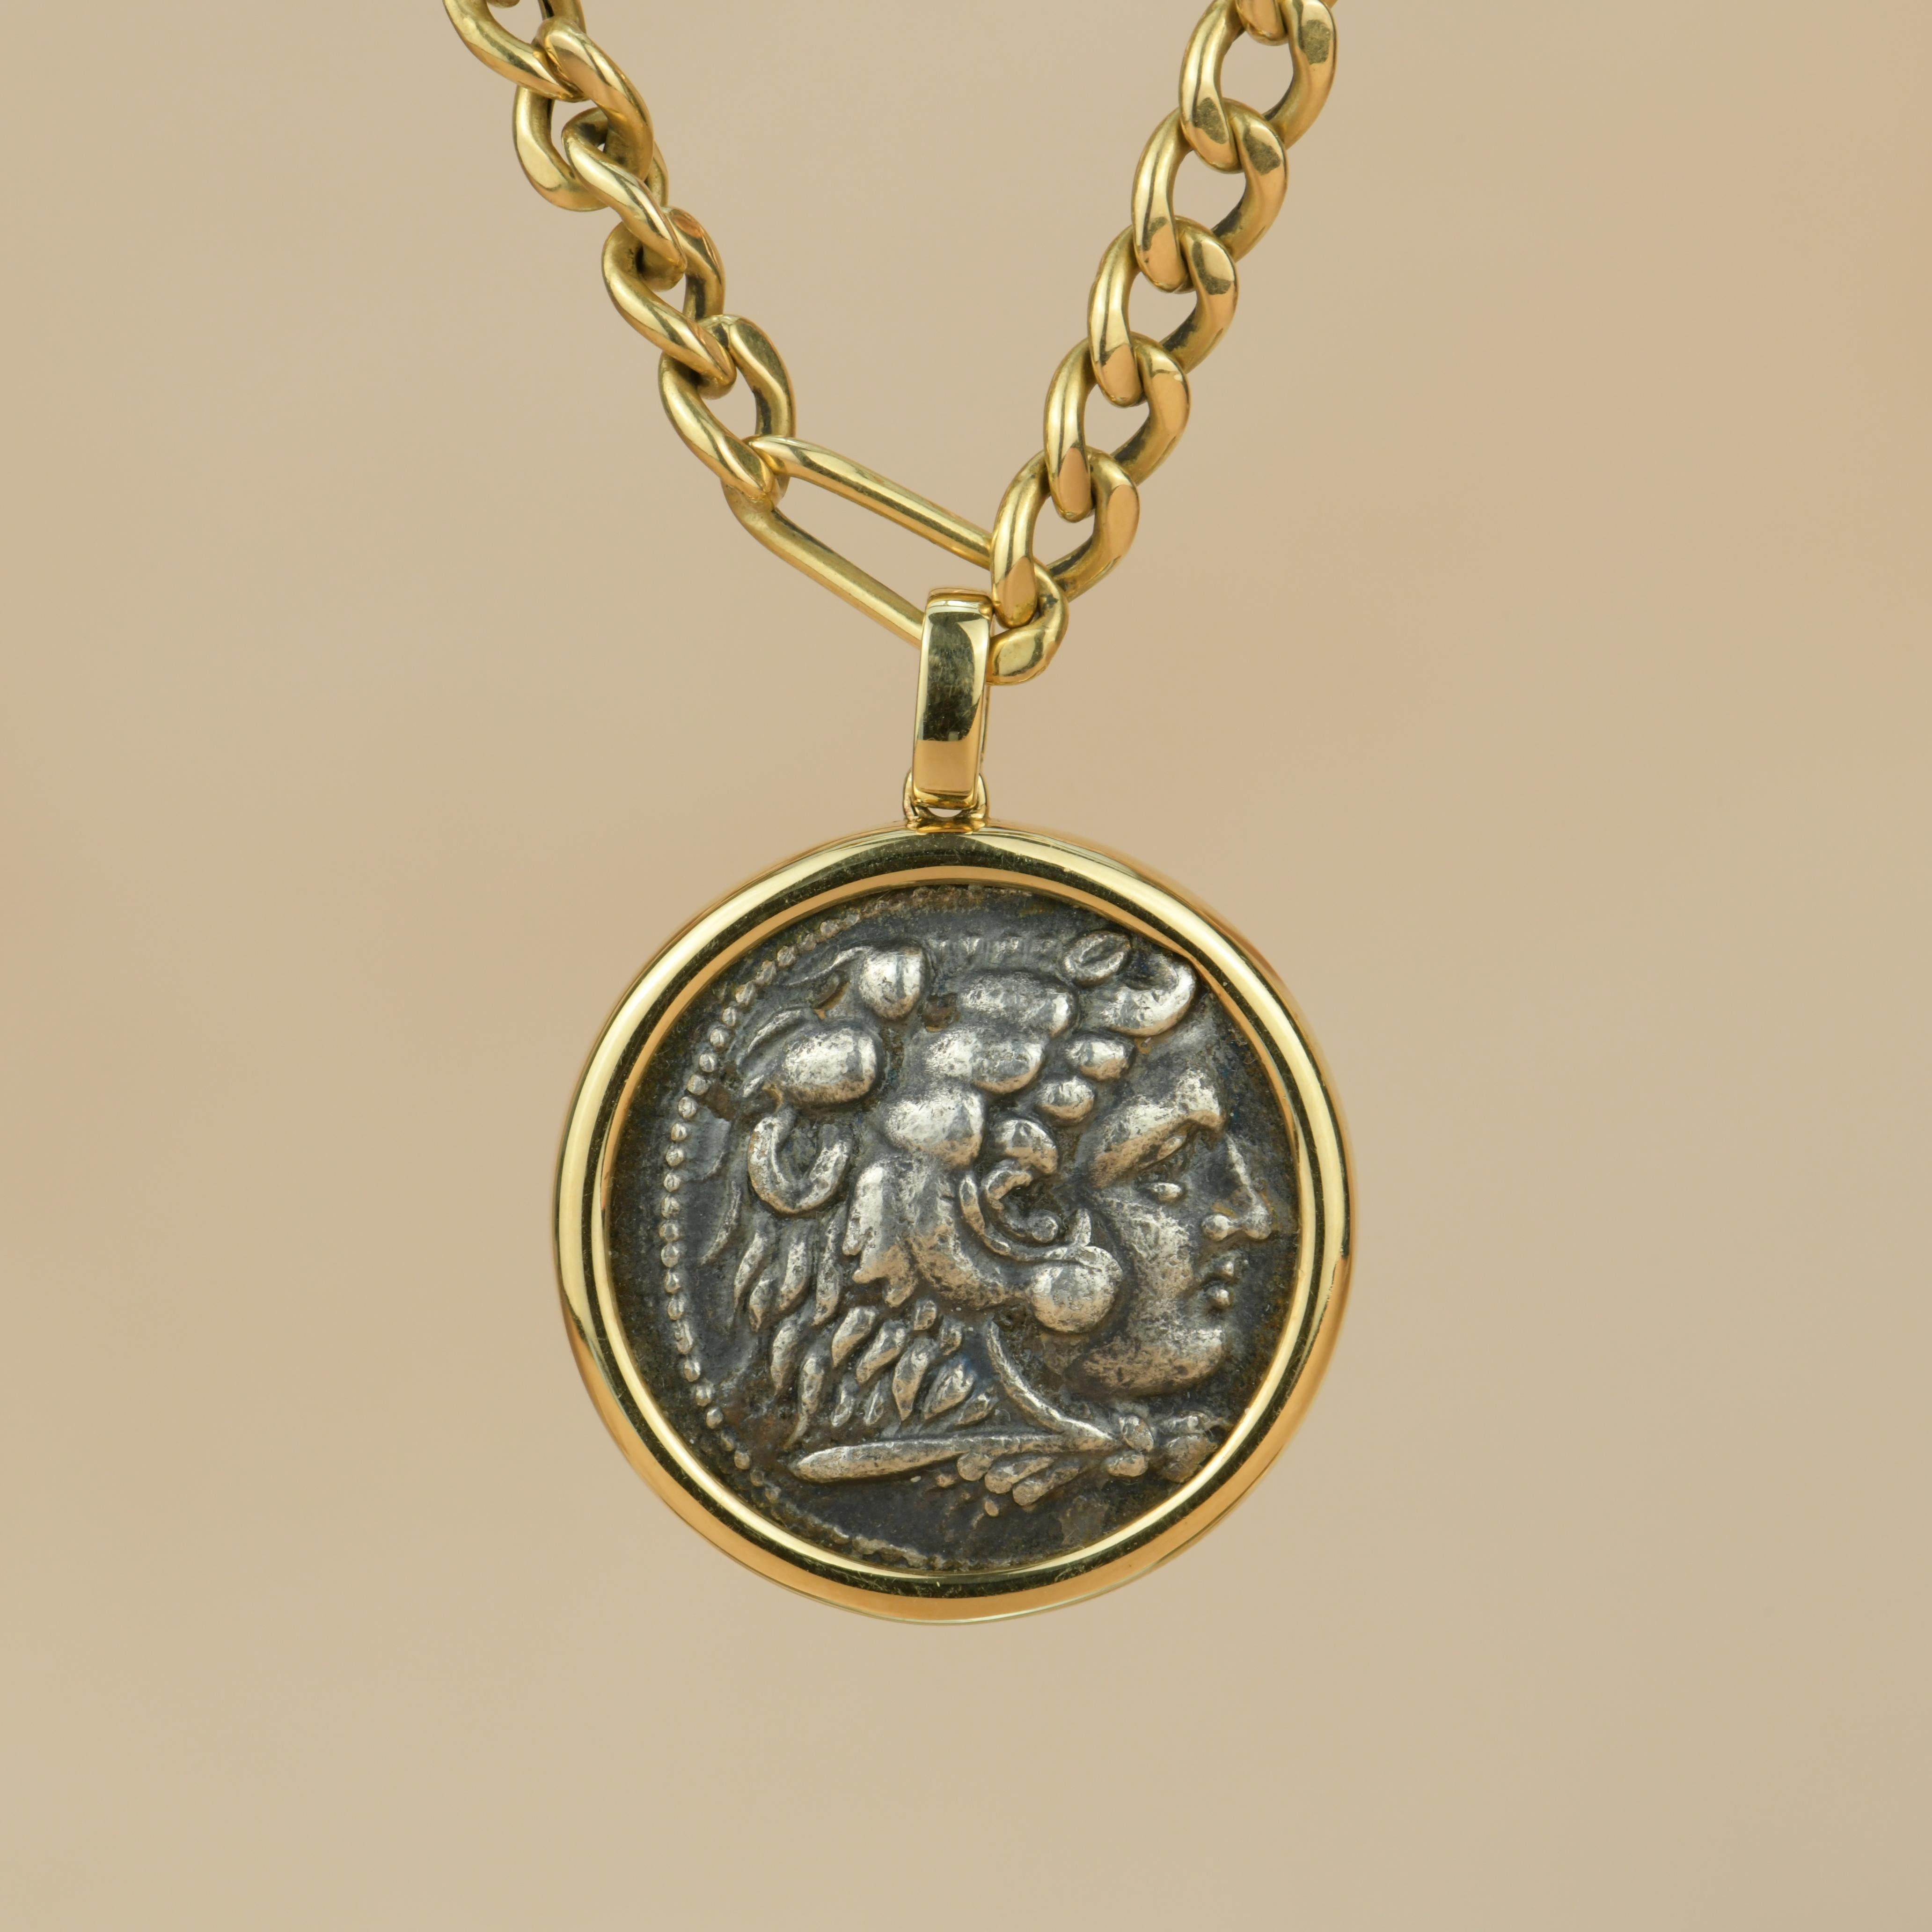 Diese große antike Münze wurde von der Münzanstalt Amphipolis in den Jahren 336-323 v. Chr. herausgegeben und befindet sich in einem hervorragenden Zustand. 

Die Kette wird hergestellt in  18k Gelbgold. 

Diese wunderschöne Halskette ist perfekt